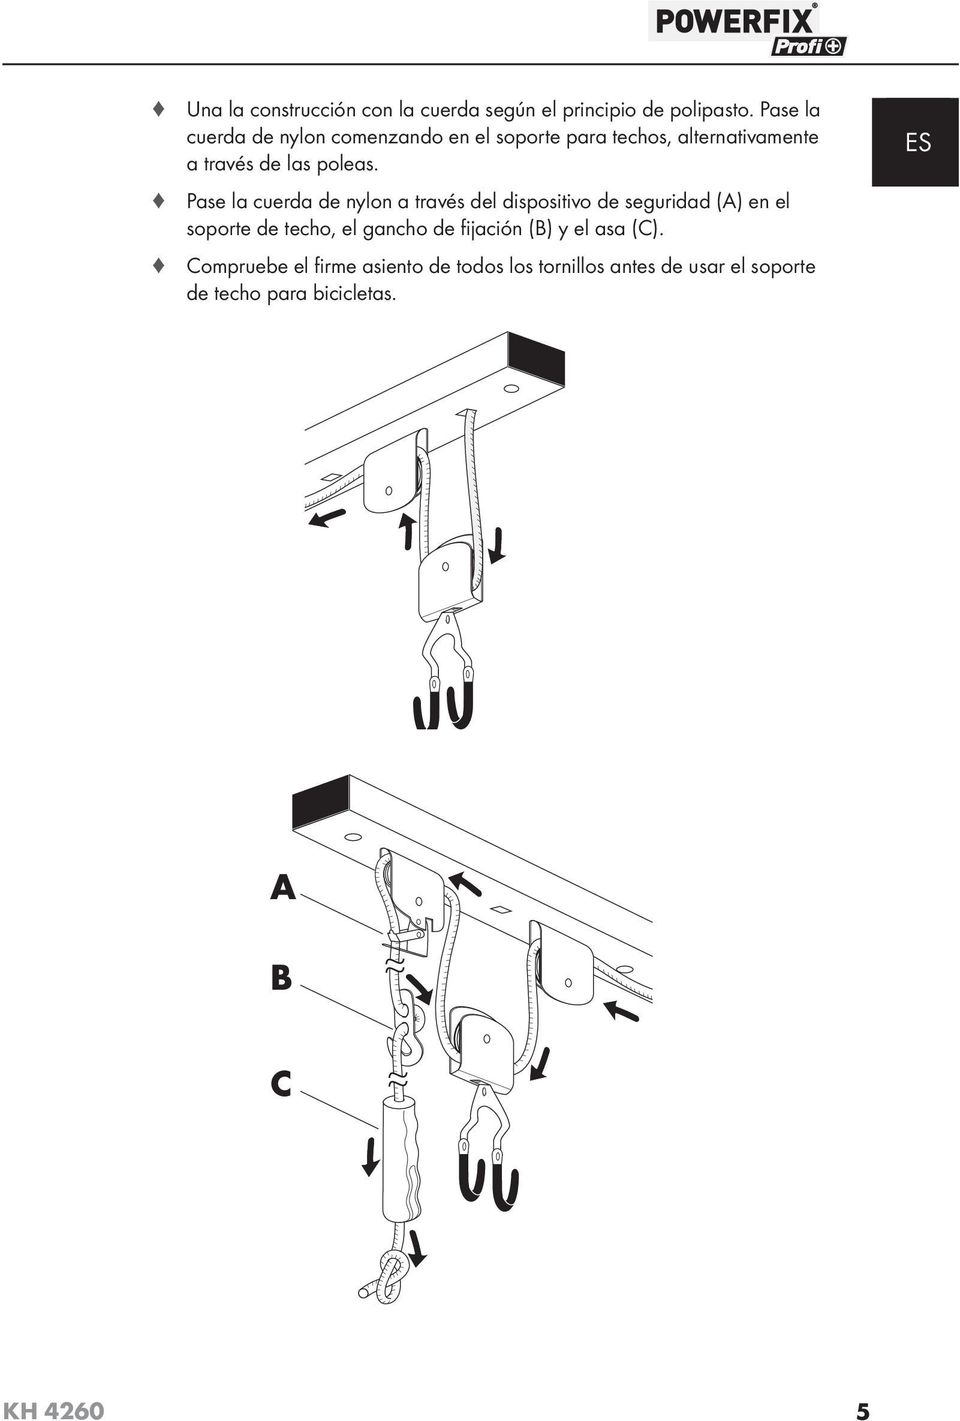 Pase la cuerda de nylon a través del dispositivo de seguridad (A) en el soporte de techo, el gancho de